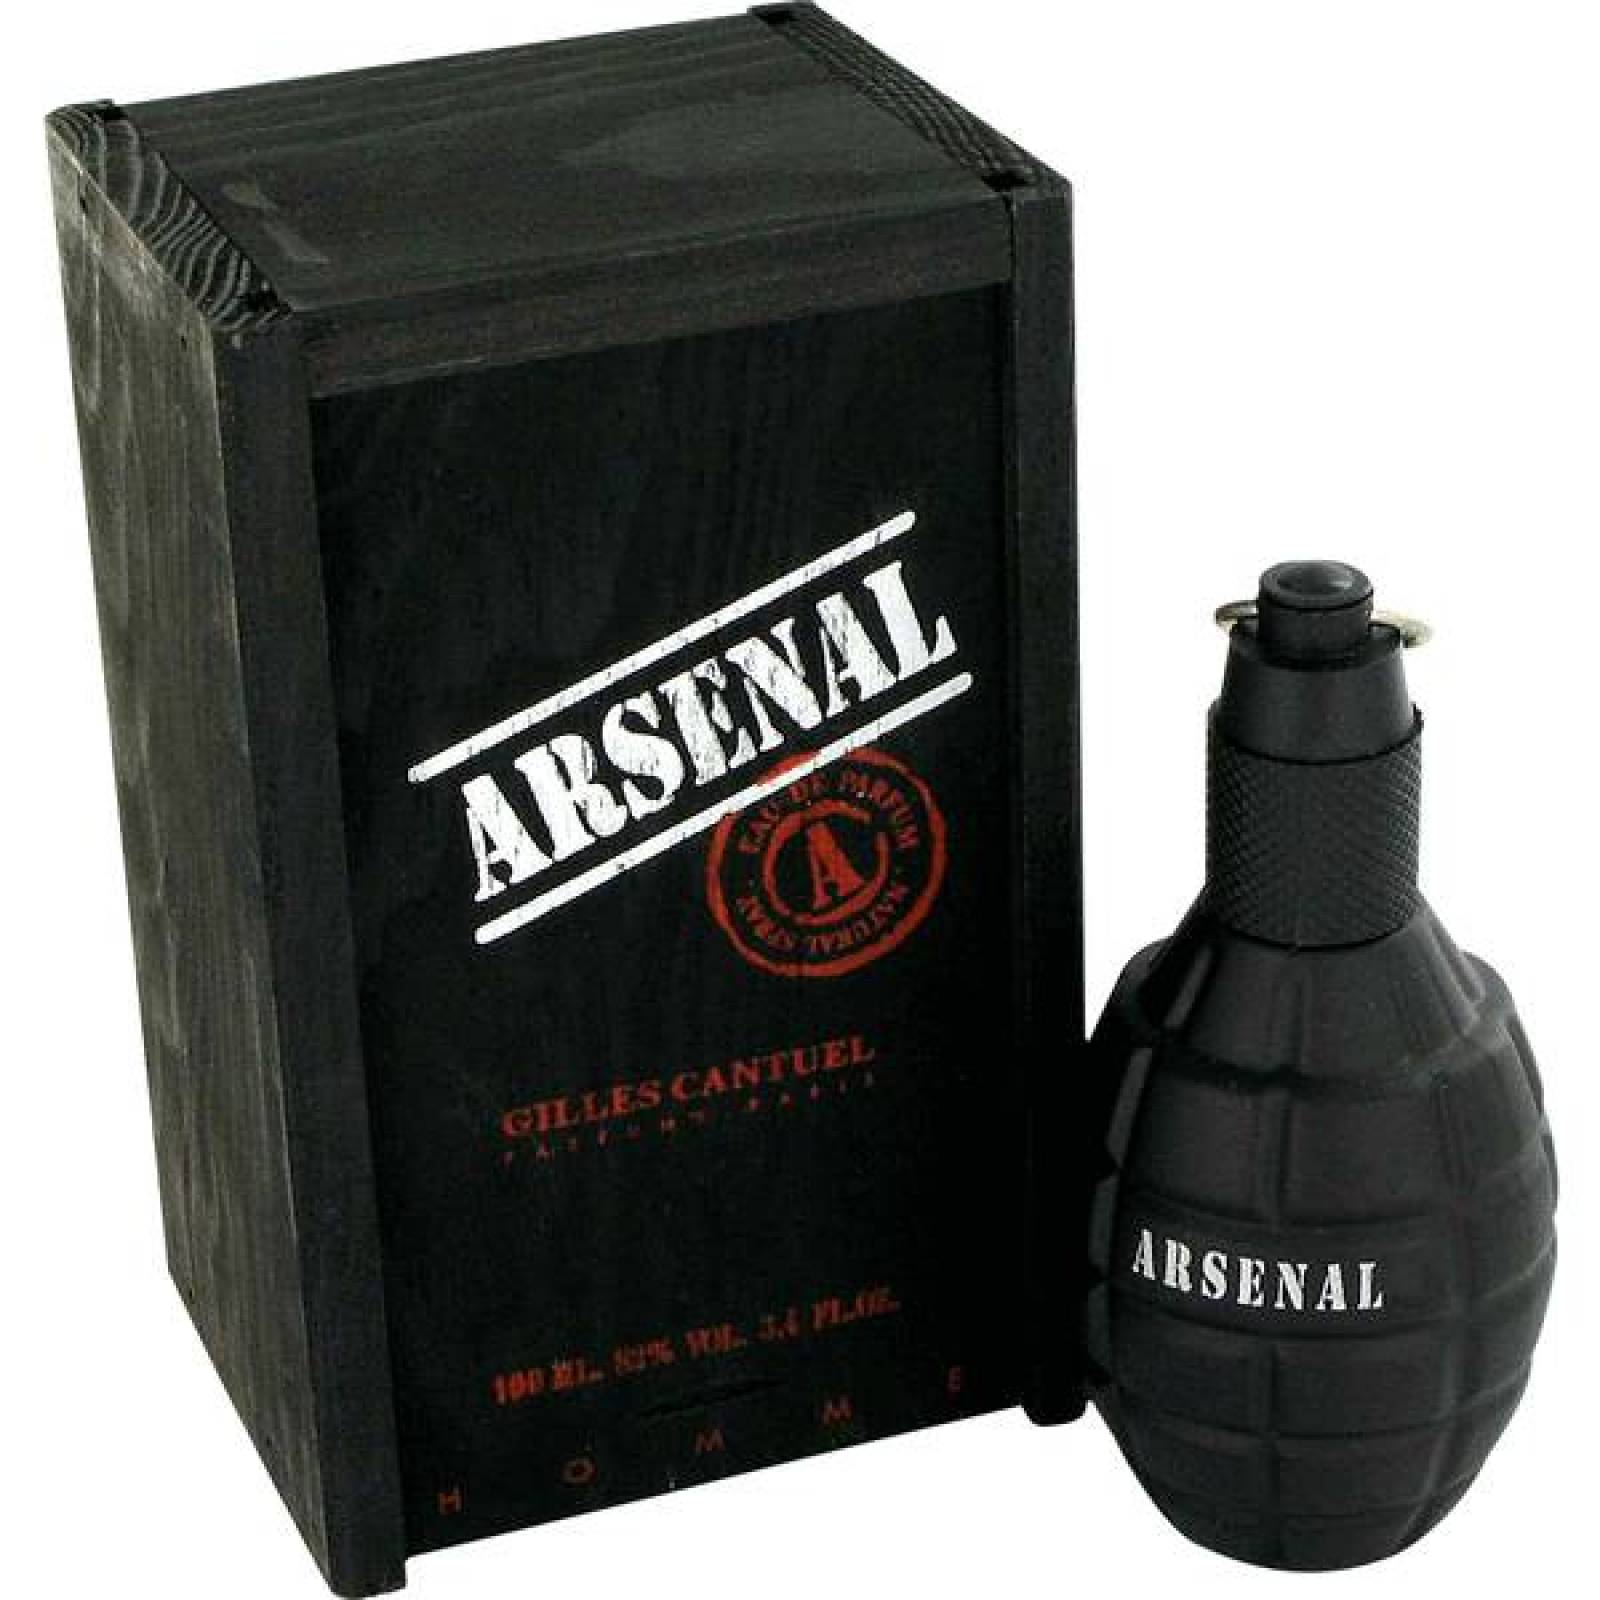 Arsenal Black Caballero 100 ml Gilles Cantuel Spray